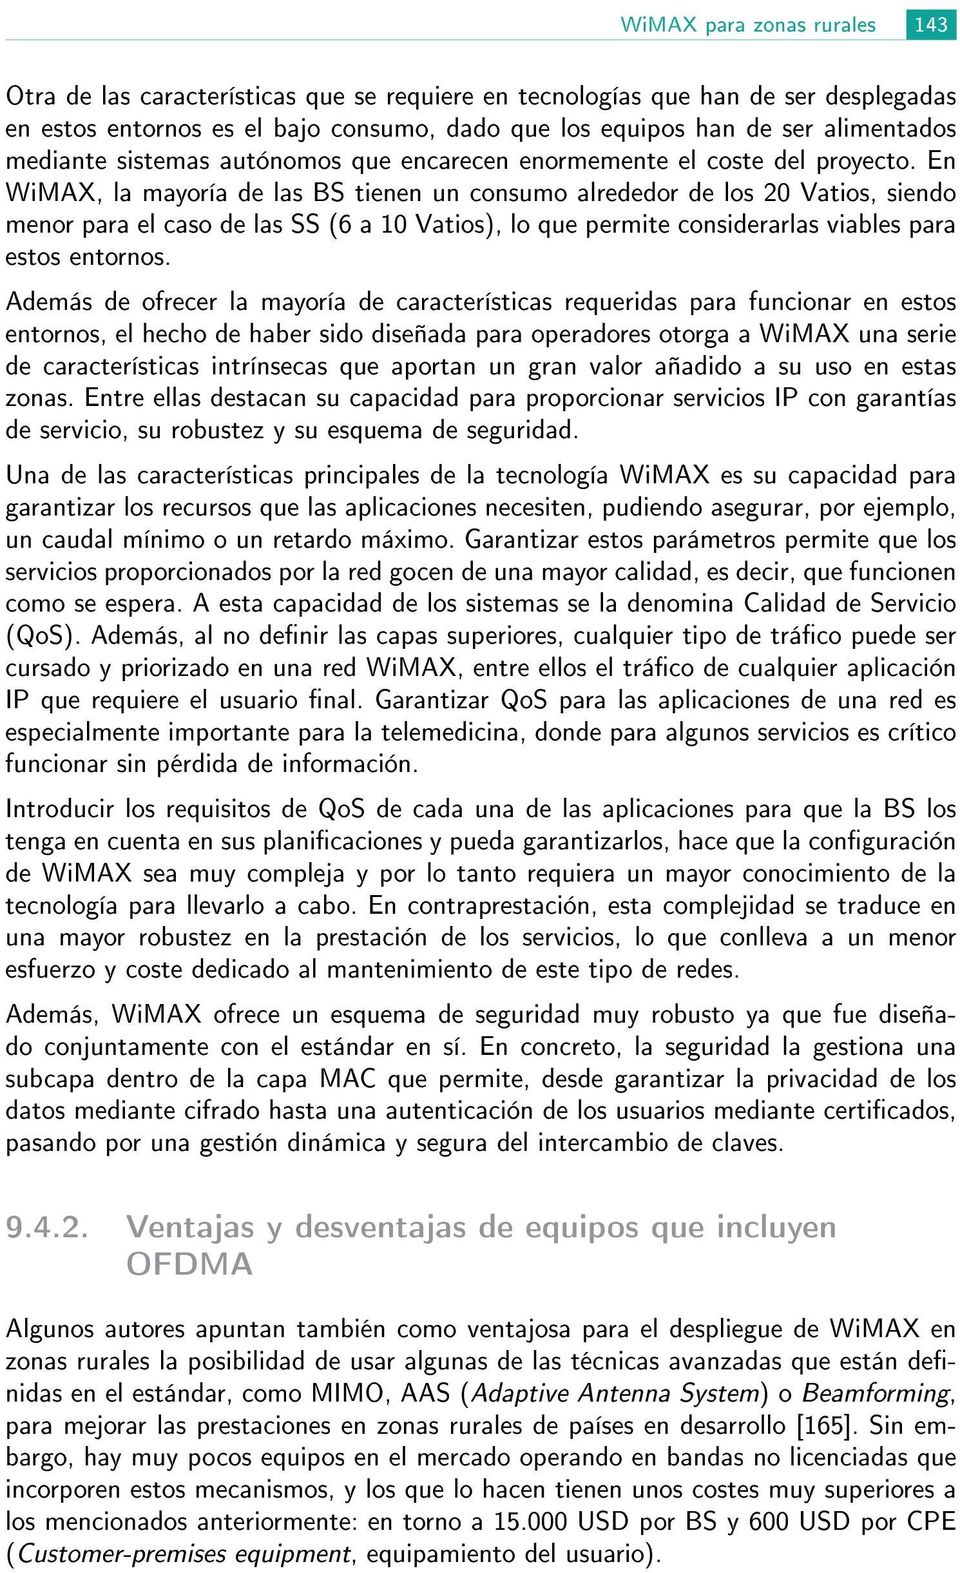 En WiMAX, la mayoría de las BS tienen un consumo alrededor de los 20 Vatios, siendo menor para el caso de las SS (6 a 10 Vatios), lo que permite considerarlas viables para estos entornos.